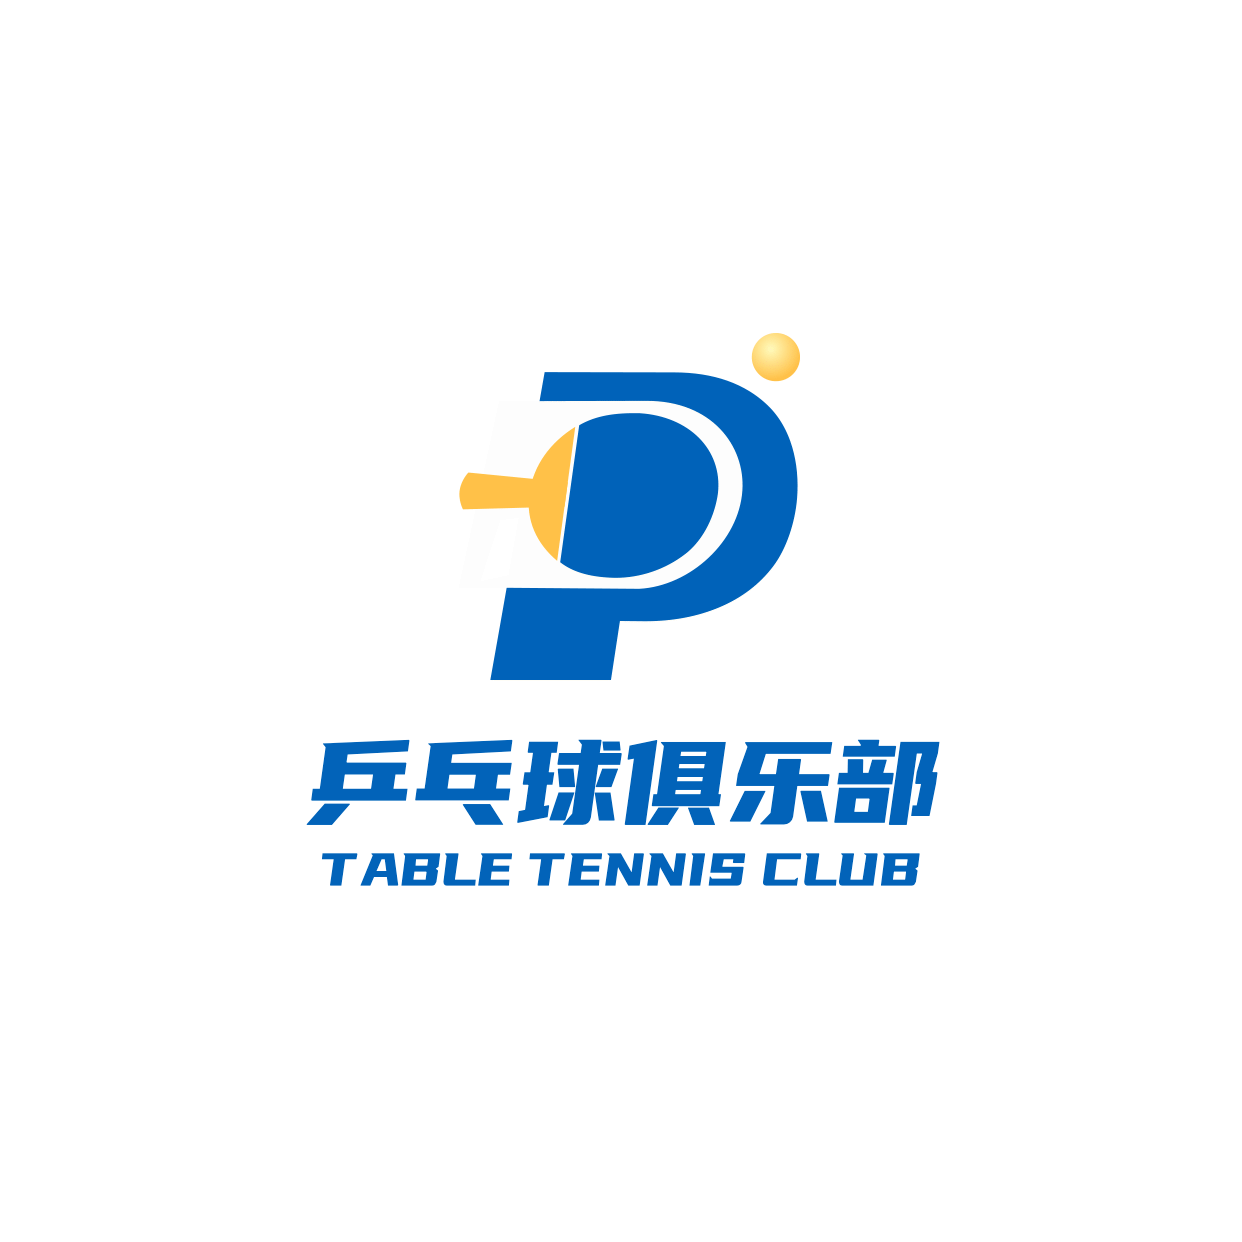 乒乓球教育培训手绘头像logo